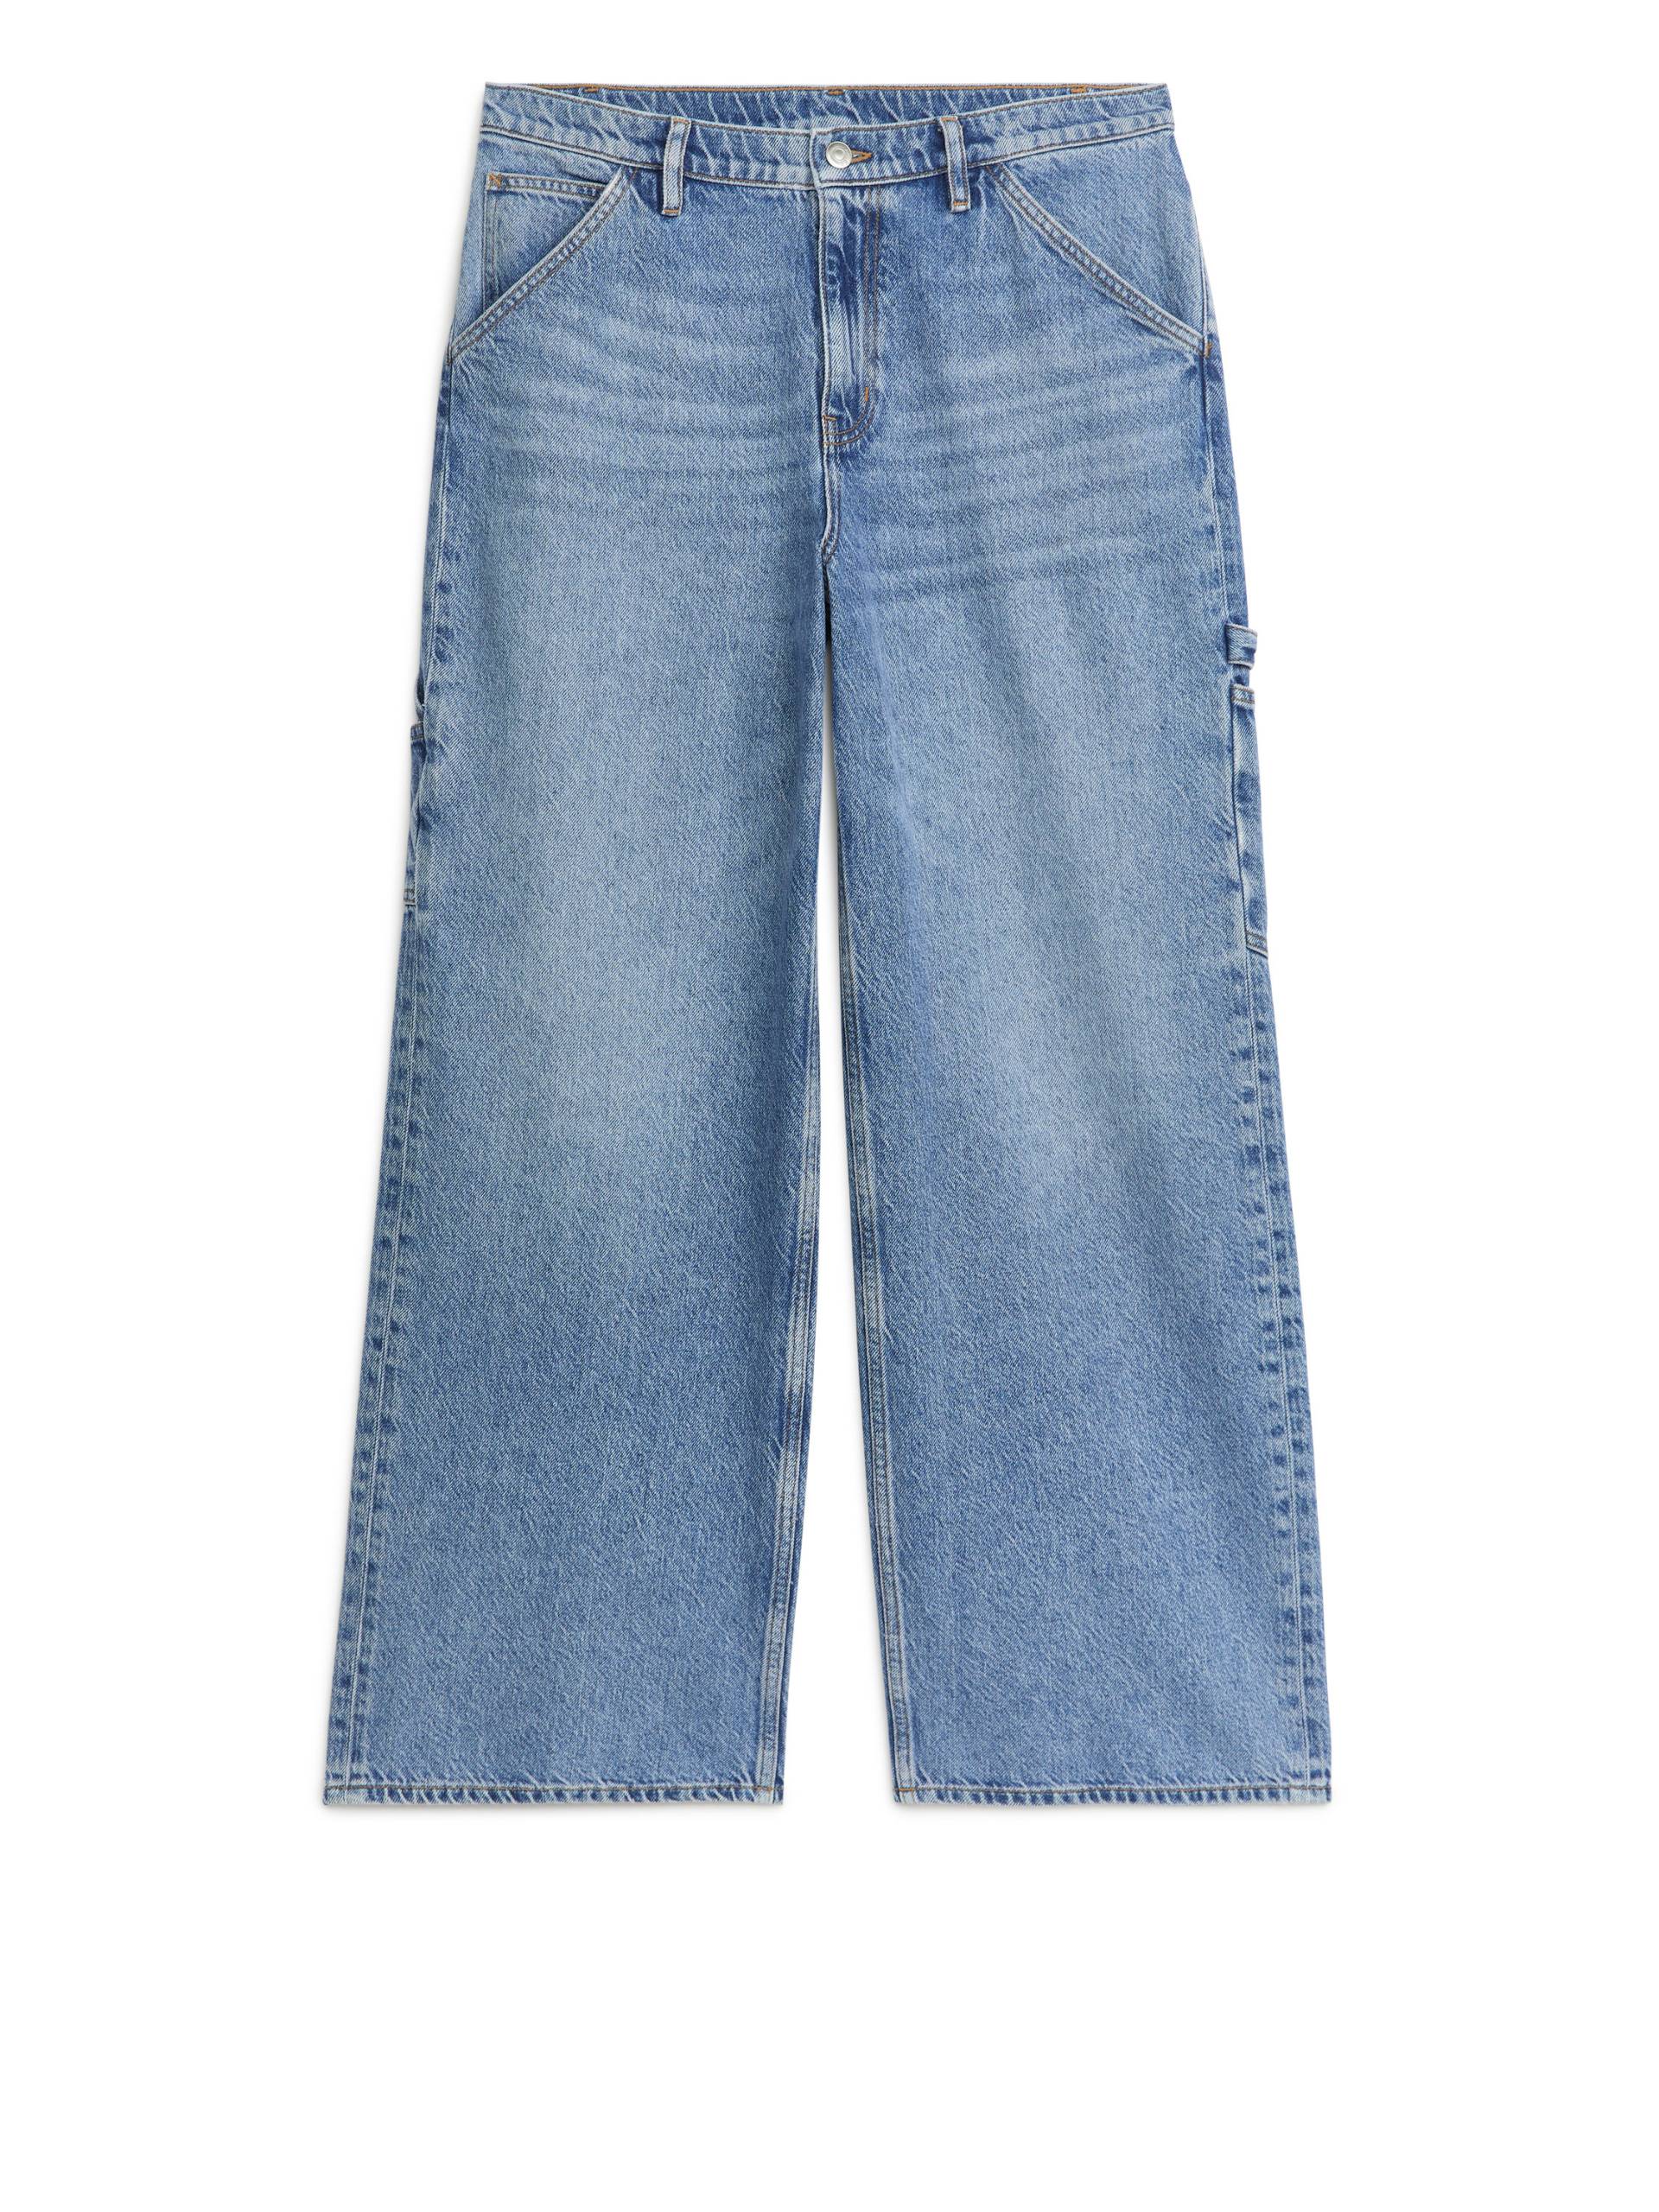 Arket WILLOW Loose Jeans Blau, Baggy in Größe 42. Farbe: Blue von Arket